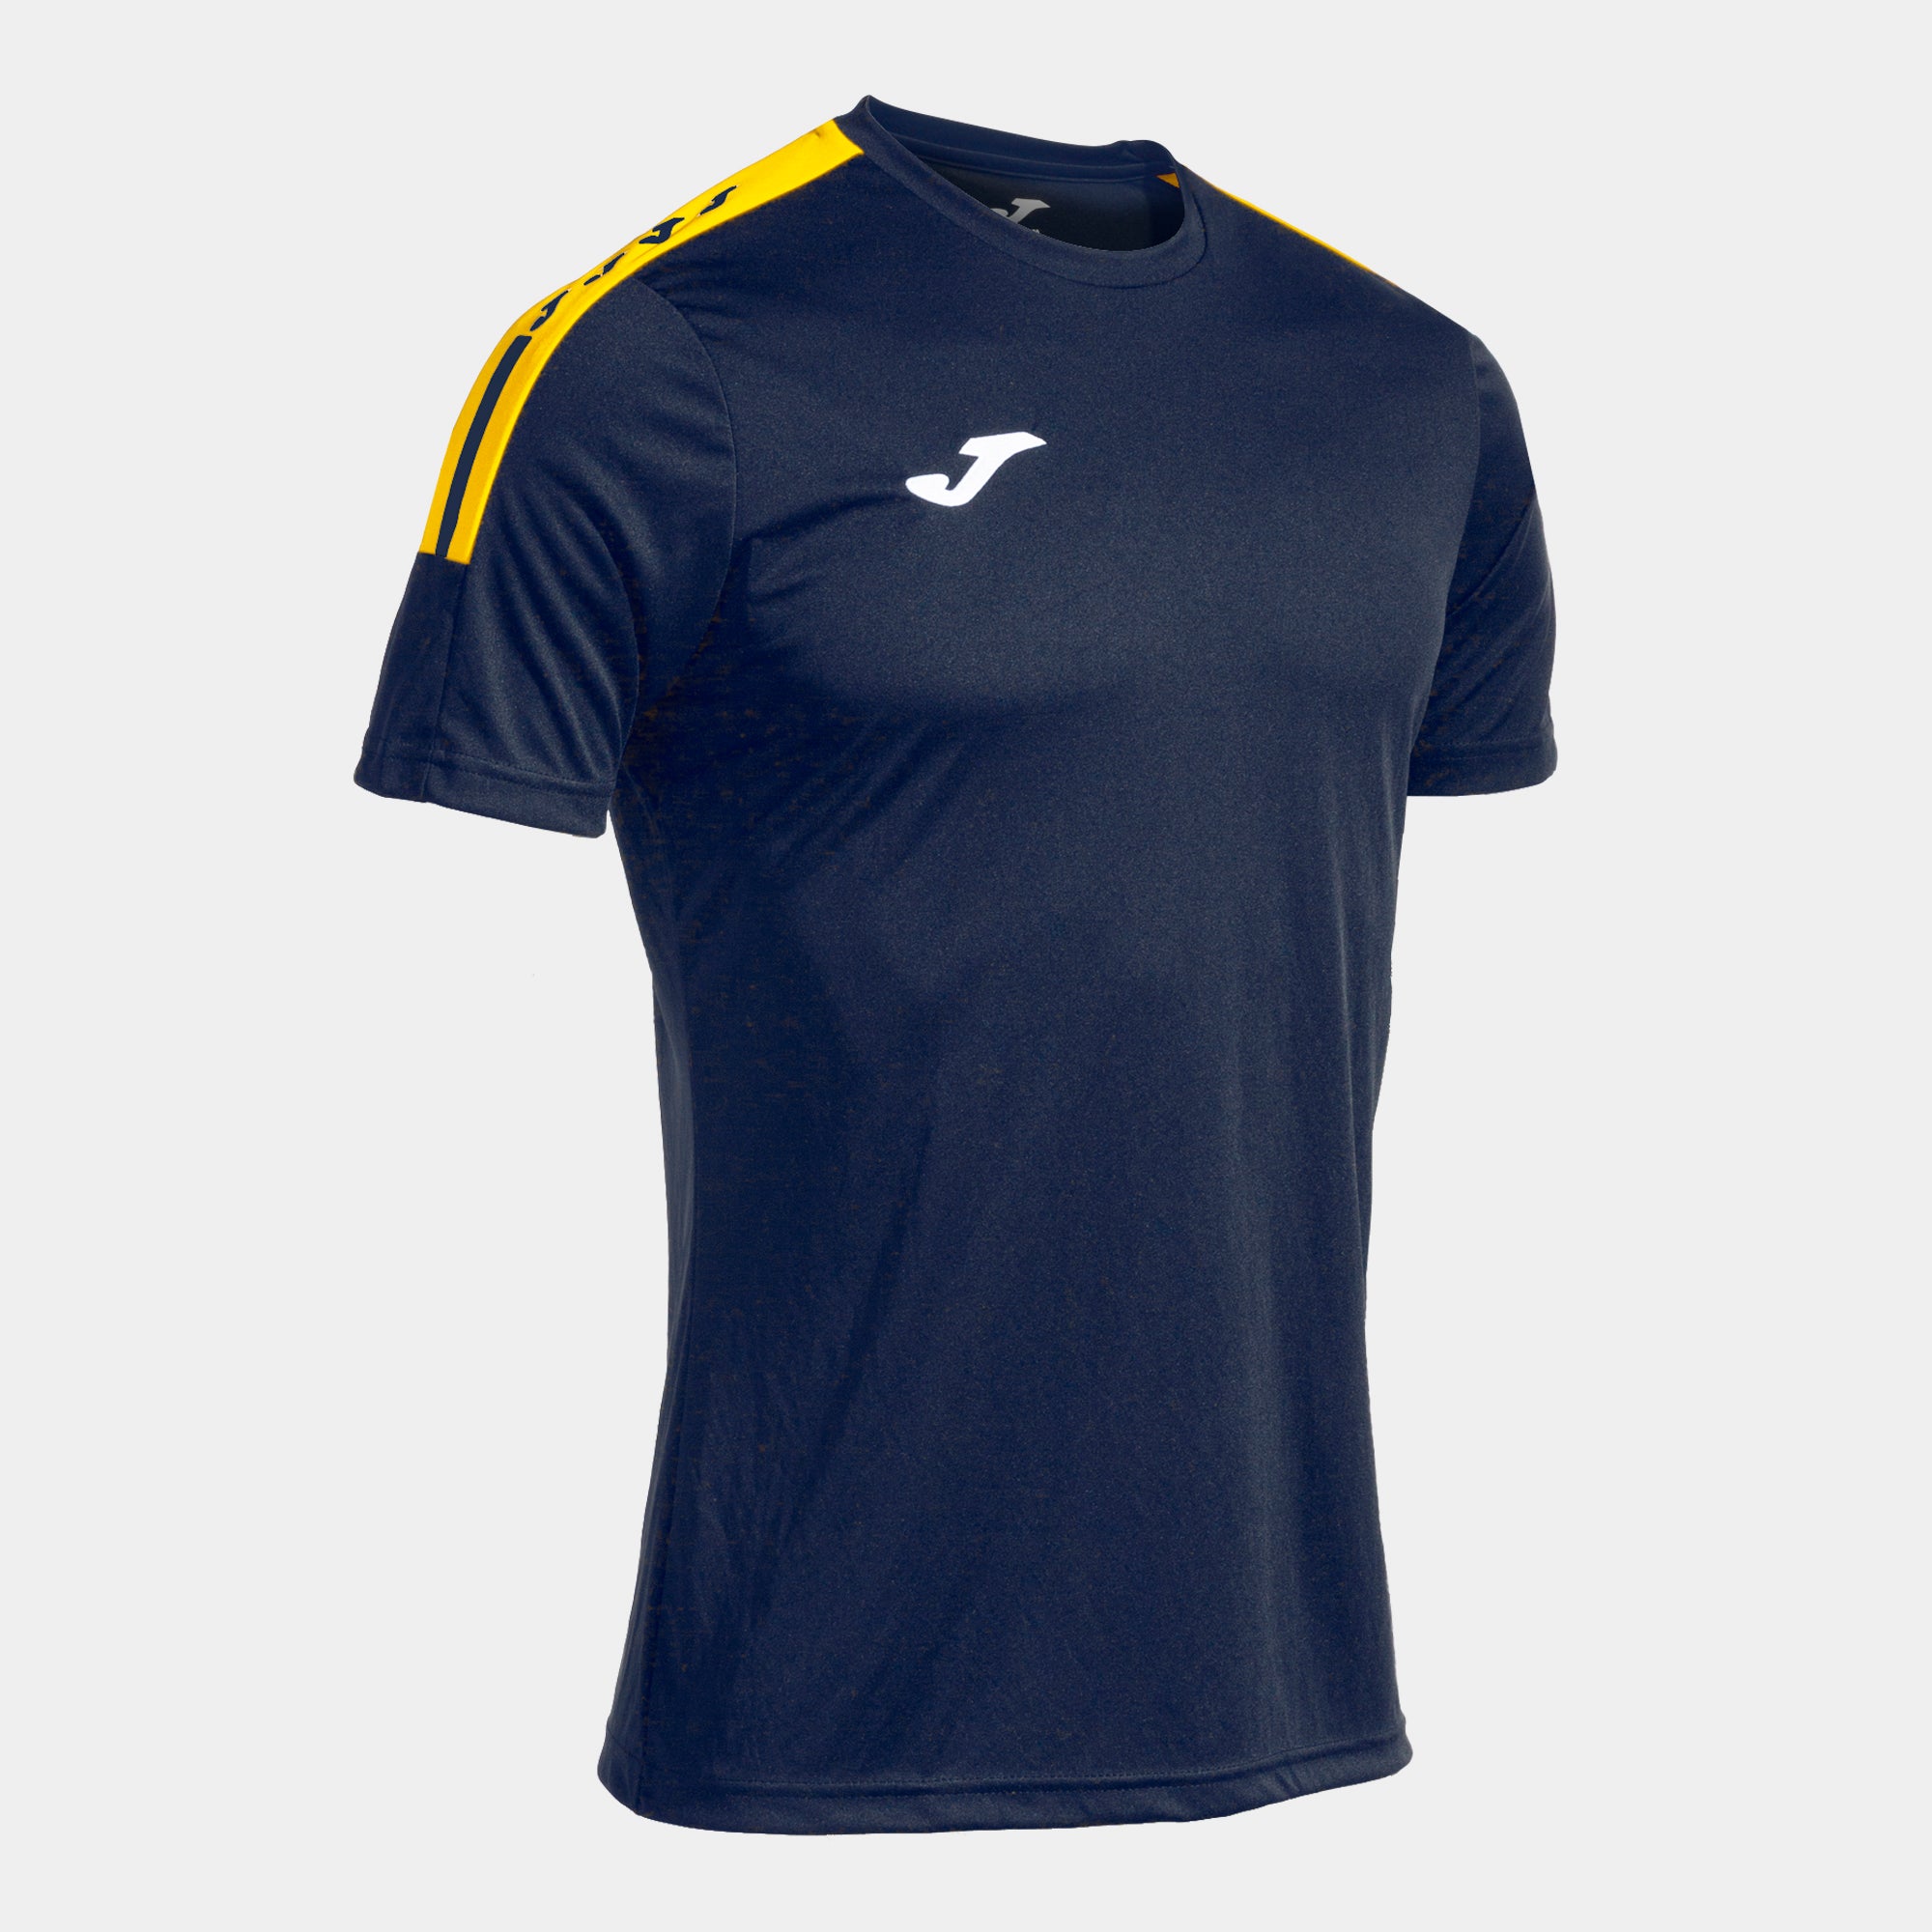 Joma Olimpiada T-Shirt - Dark Navy/Yellow